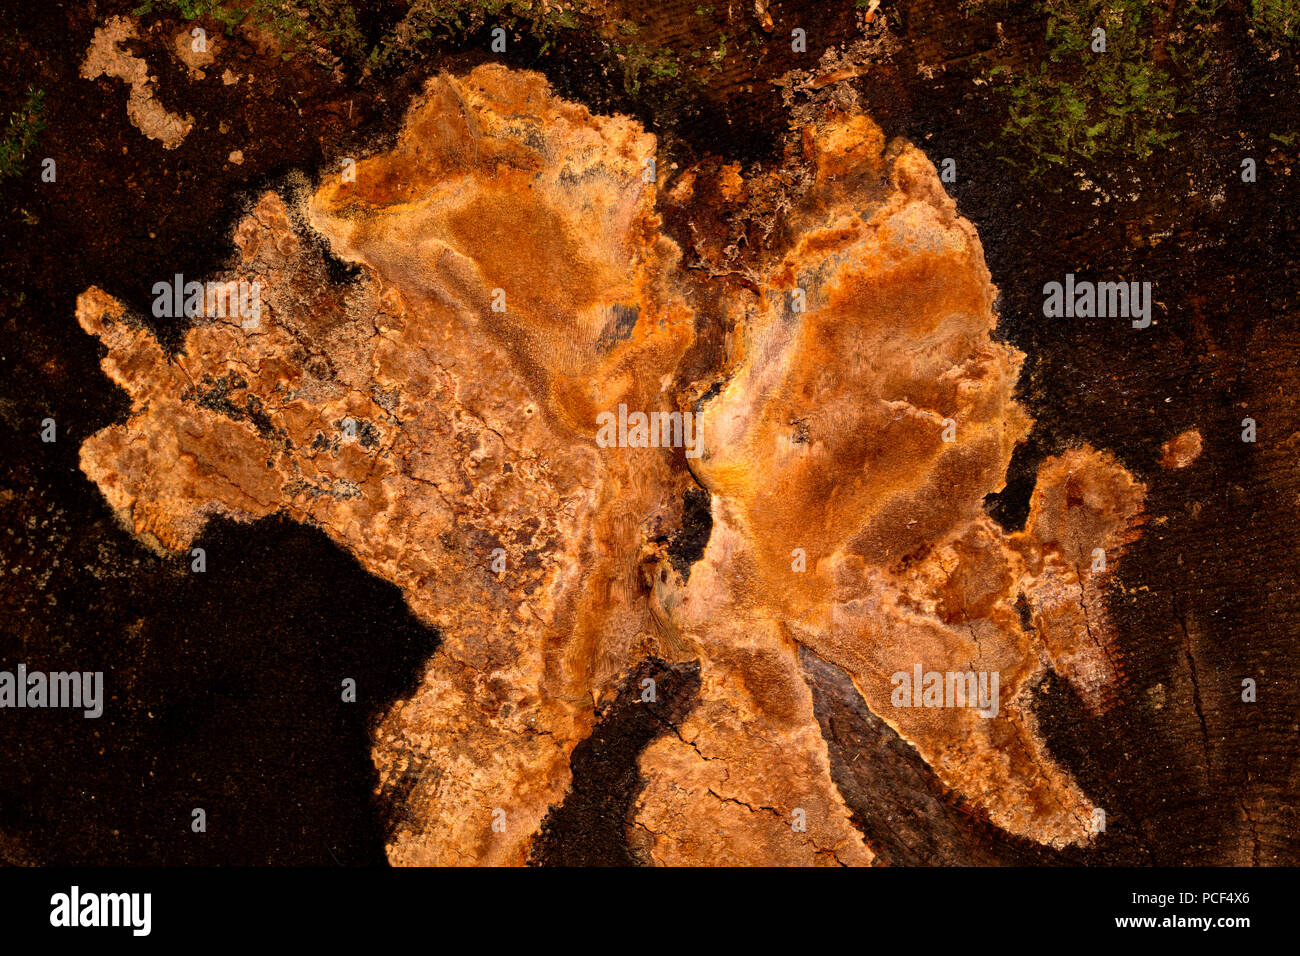 fragrant tinder fungus, (Phellinus pouzarii) Stock Photo